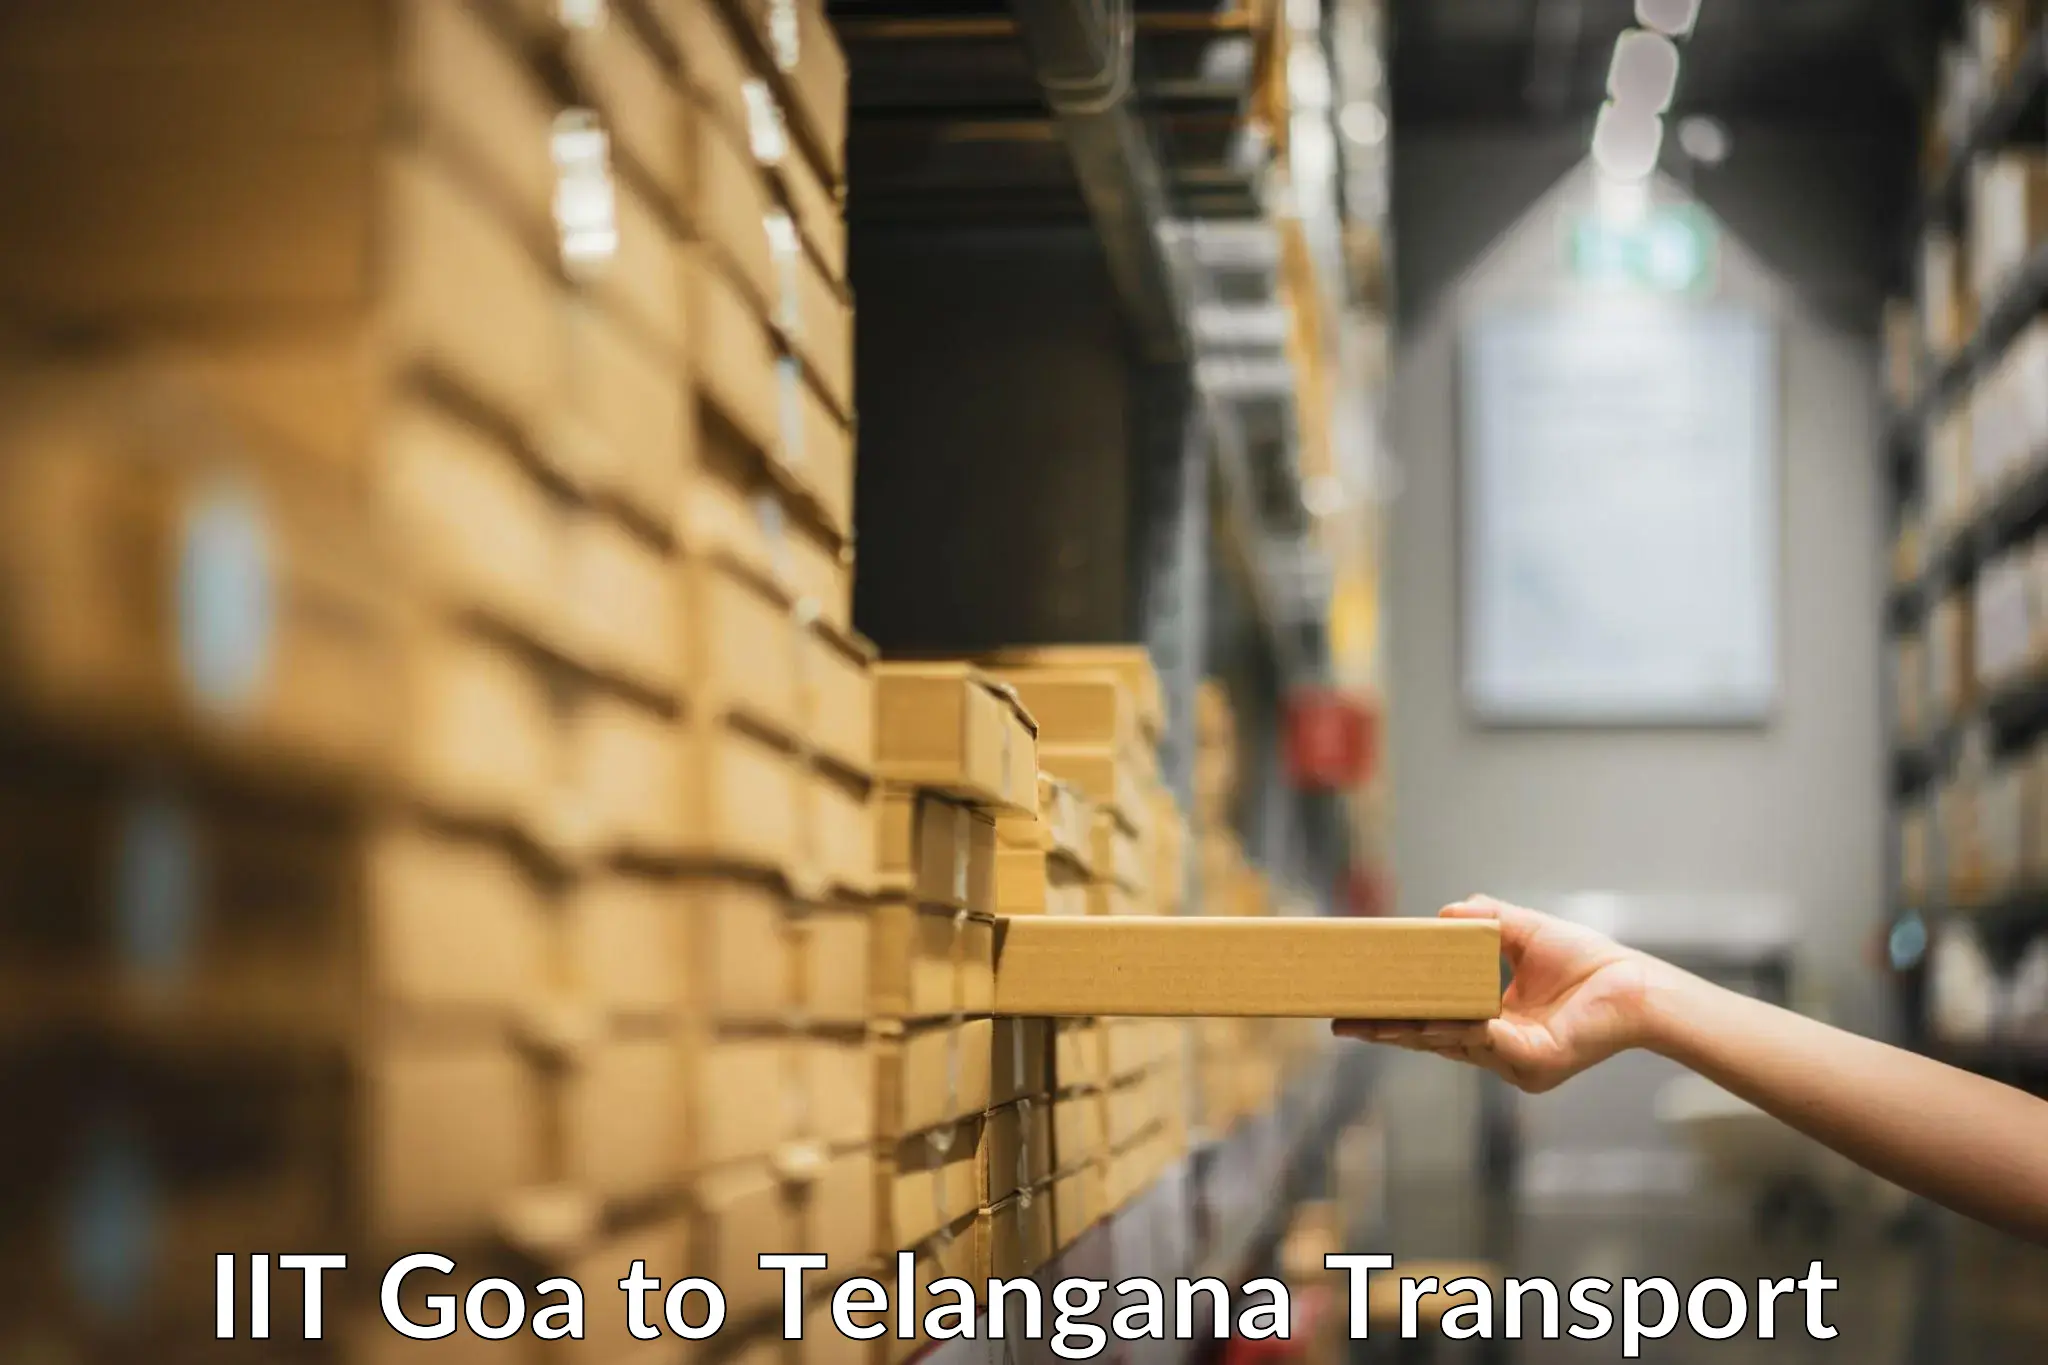 Furniture transport service IIT Goa to Kollapur